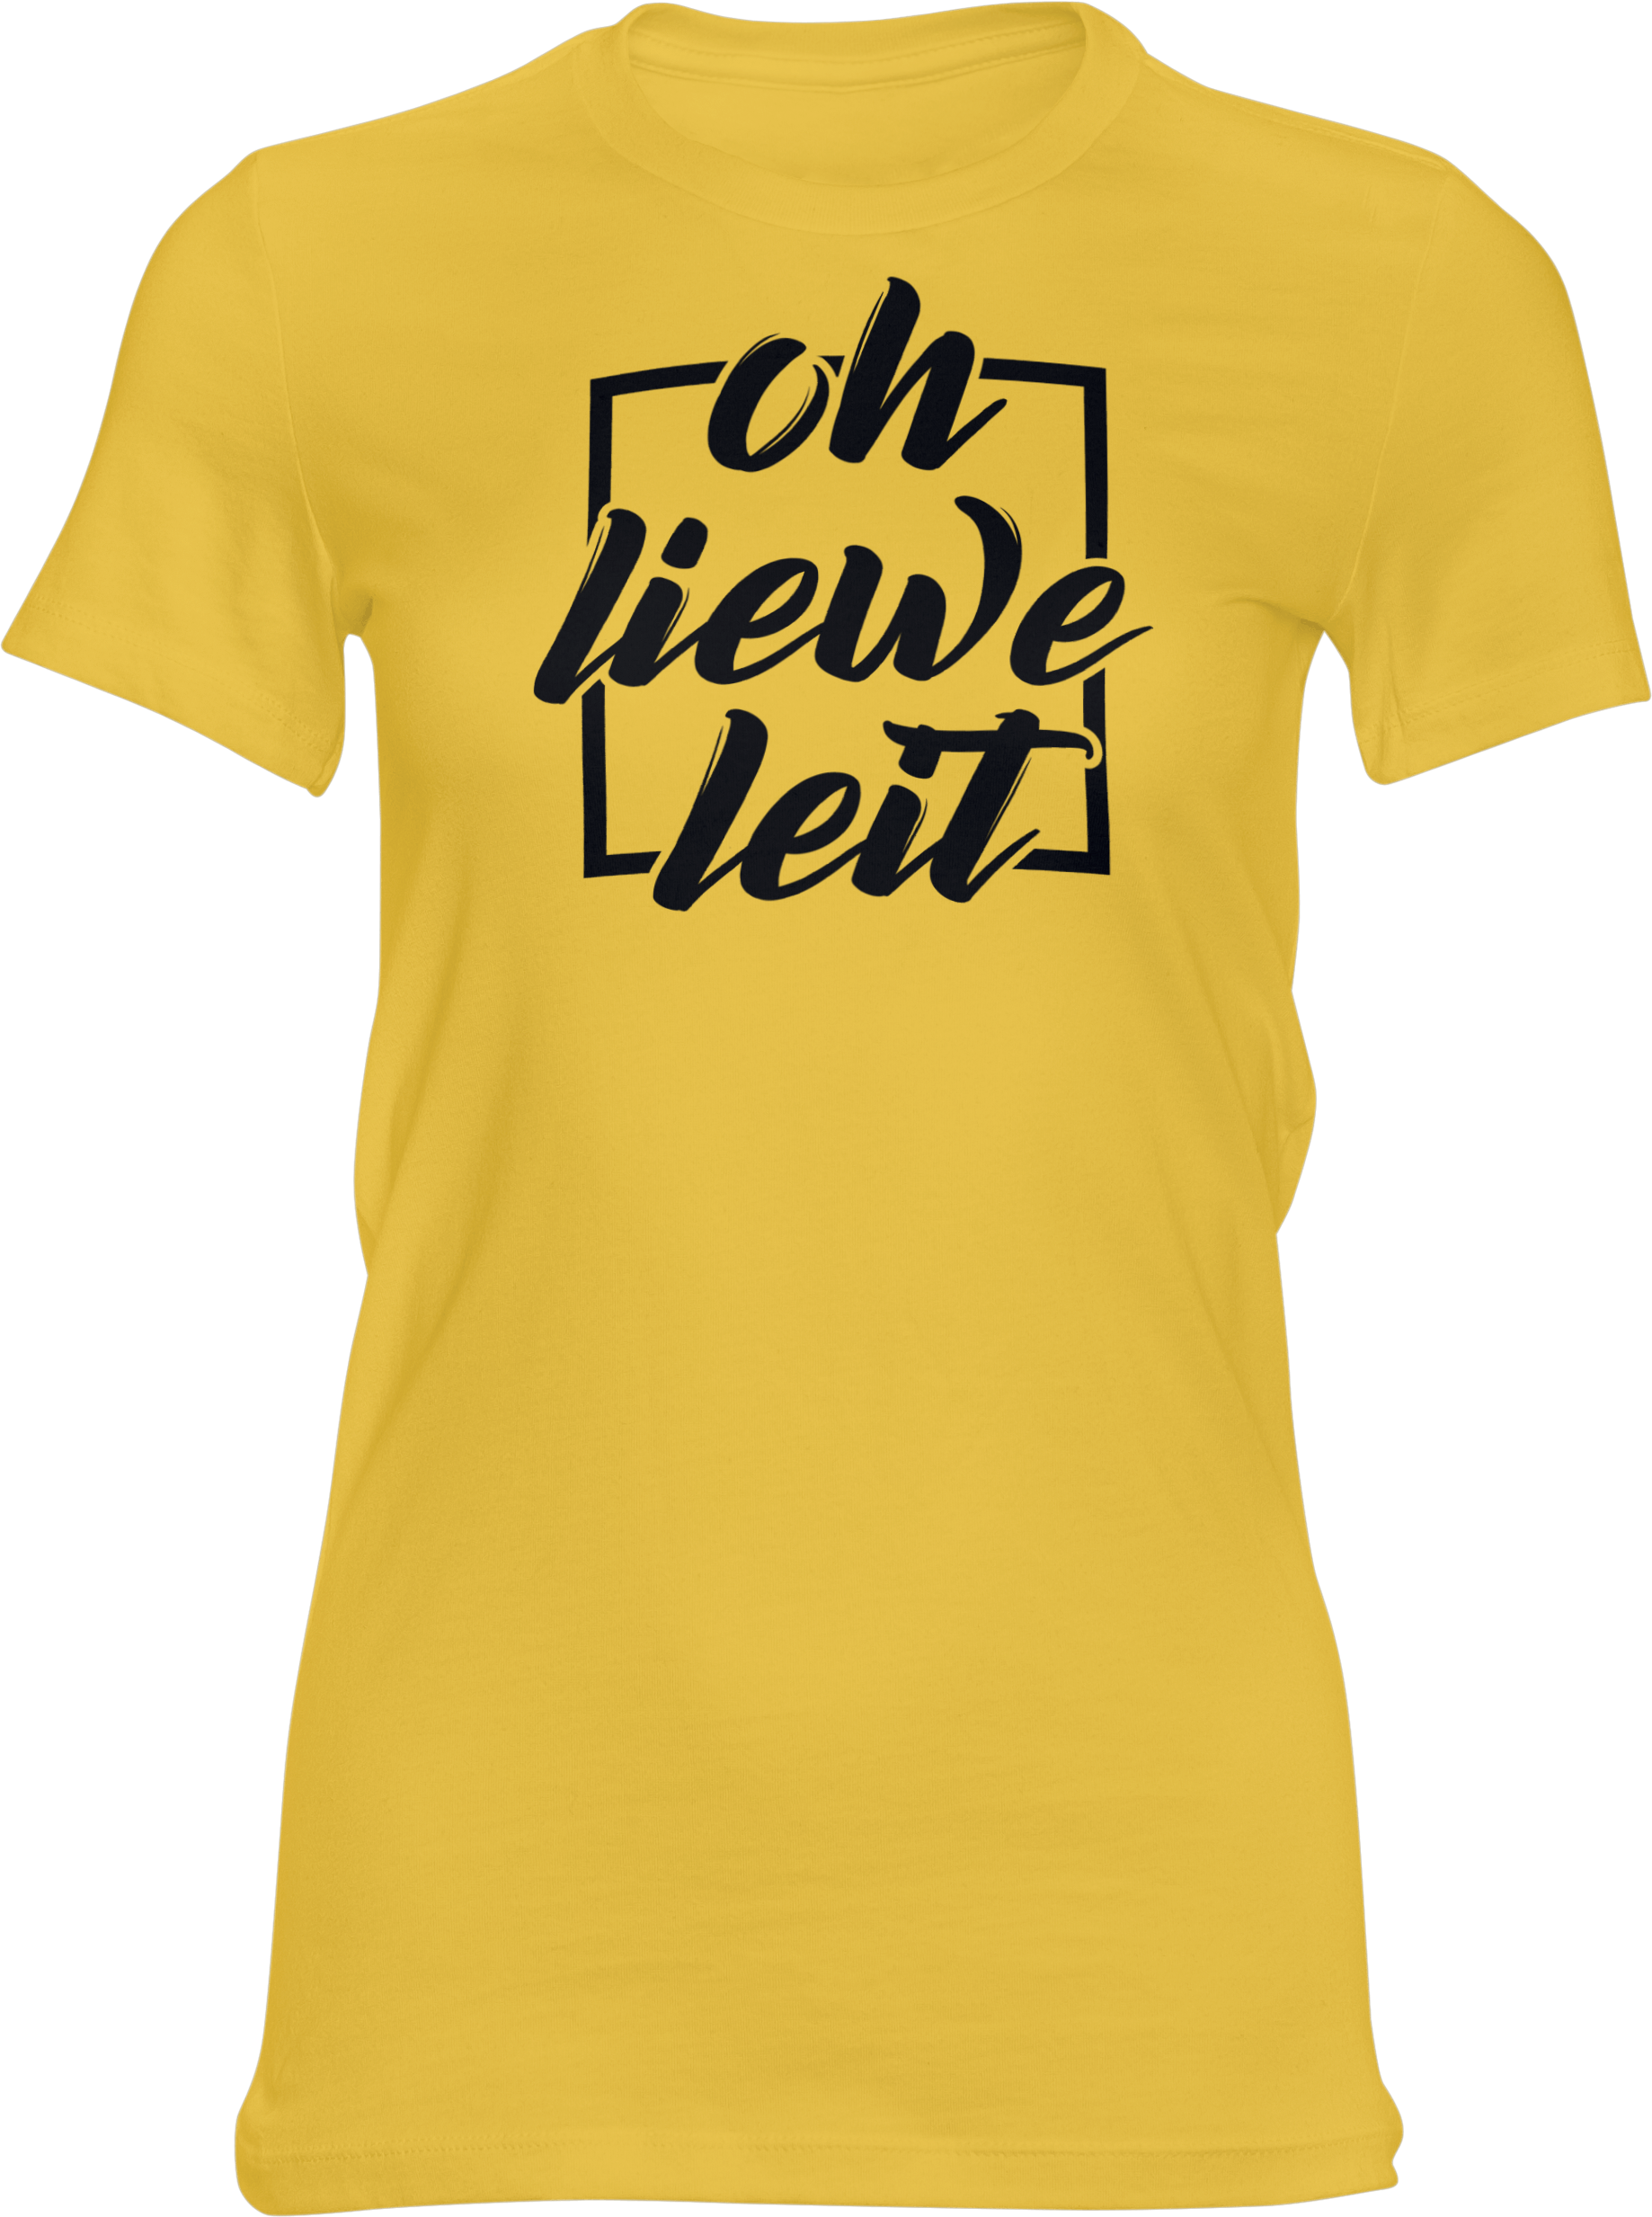 Motiv-Shirt – Oh liewe Leit – Girlie-Shirt (gelb)